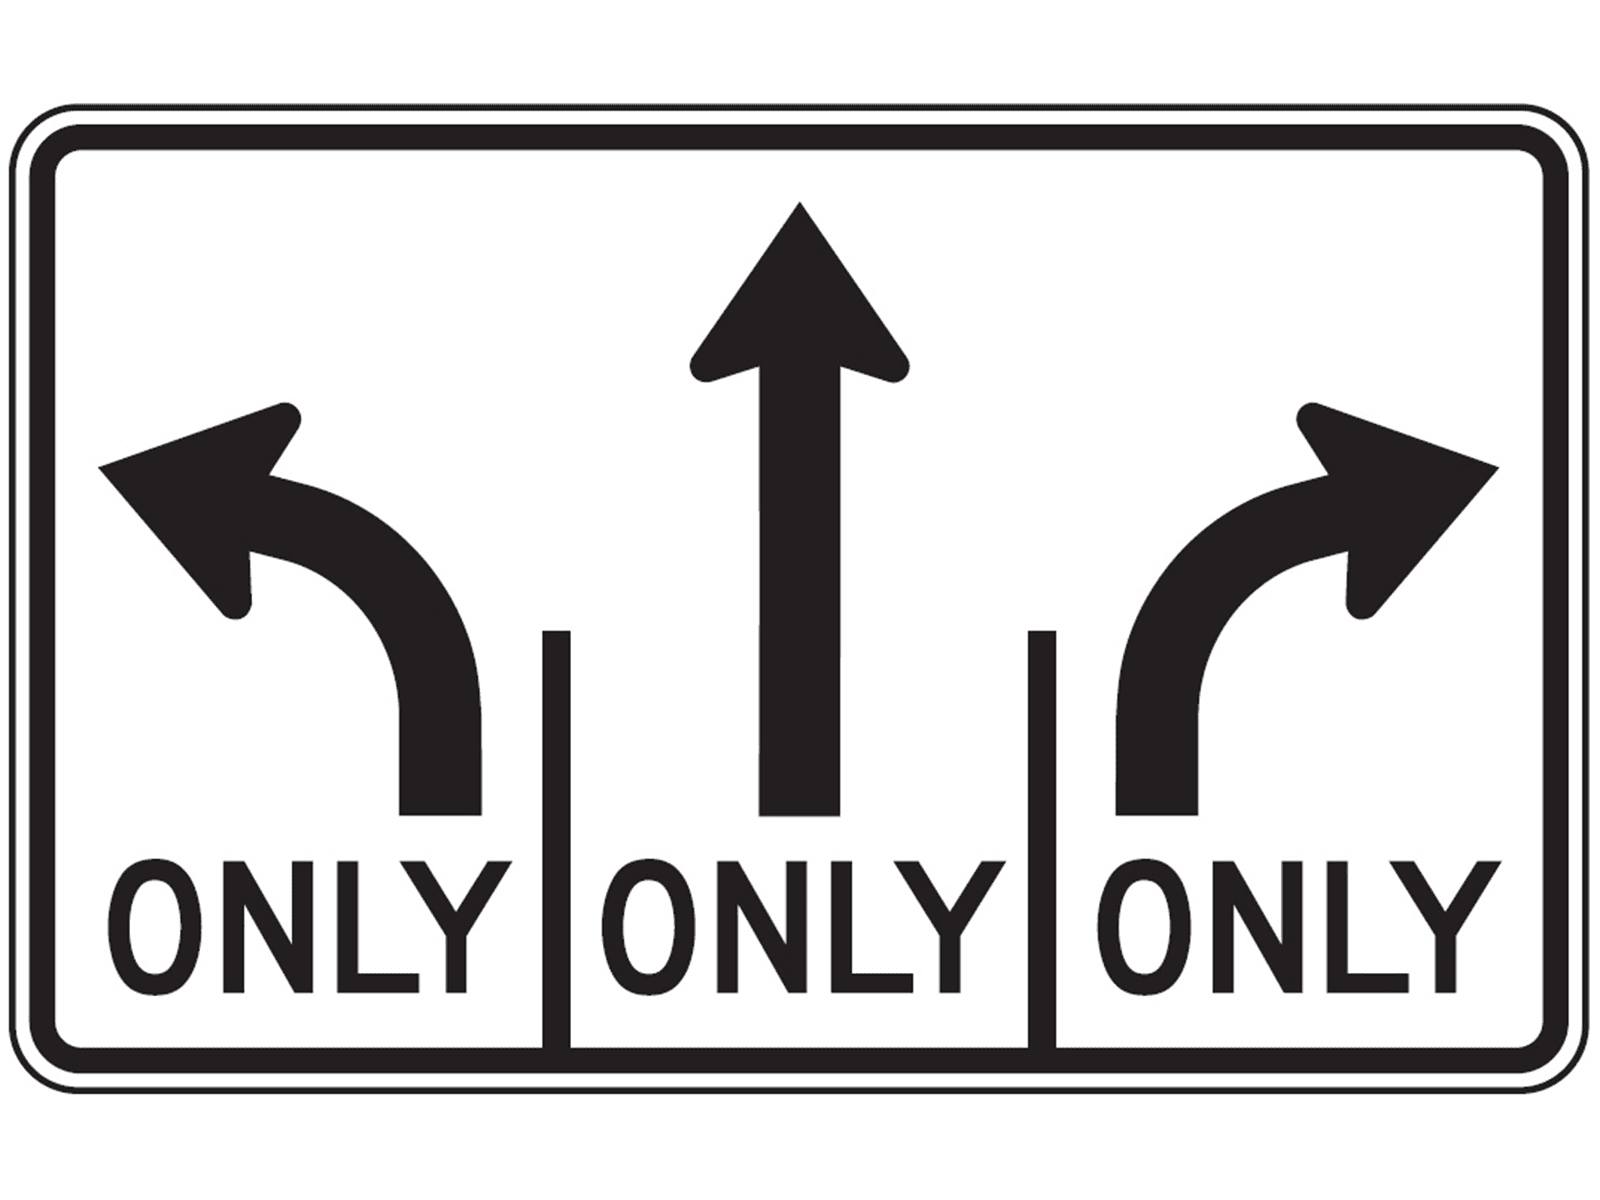 Lane Use Control Sign R3-8b - R3: Lane Usage and Turns